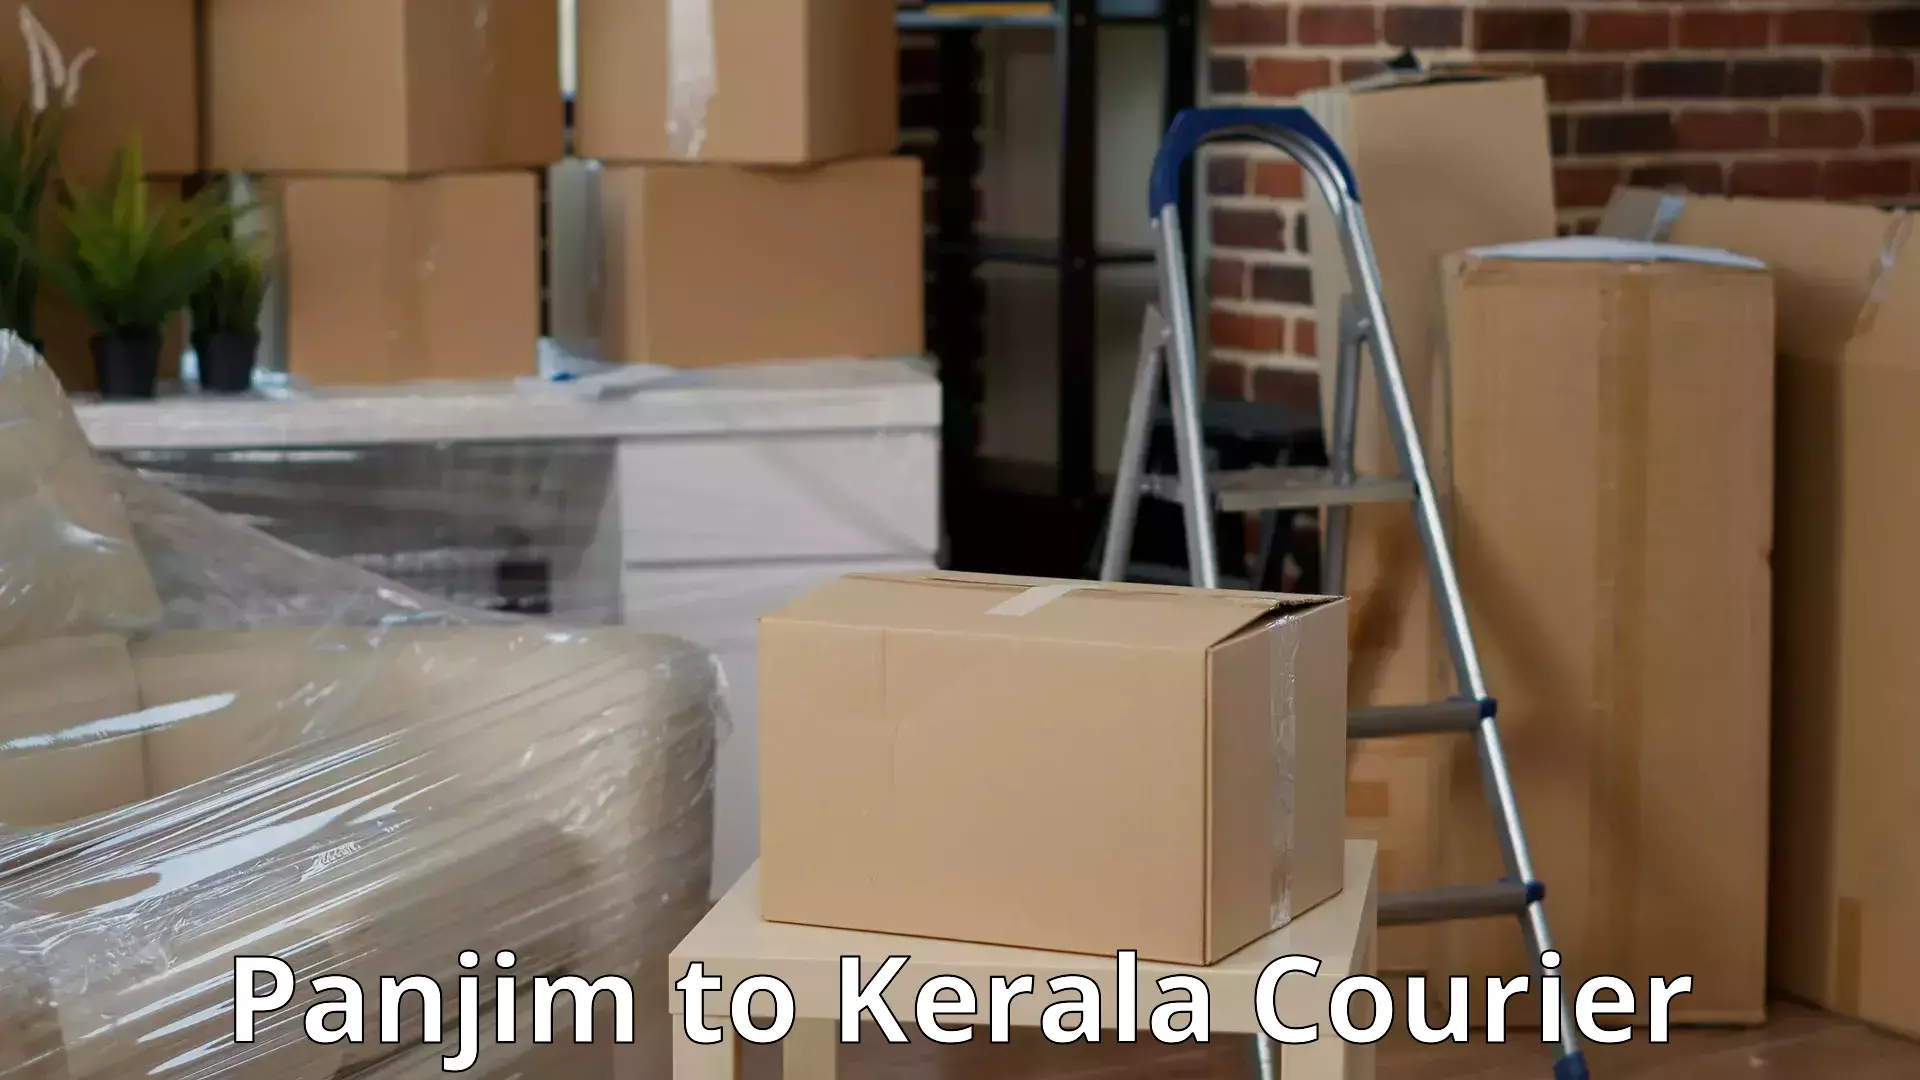 Interstate household moving in Panjim to Kerala